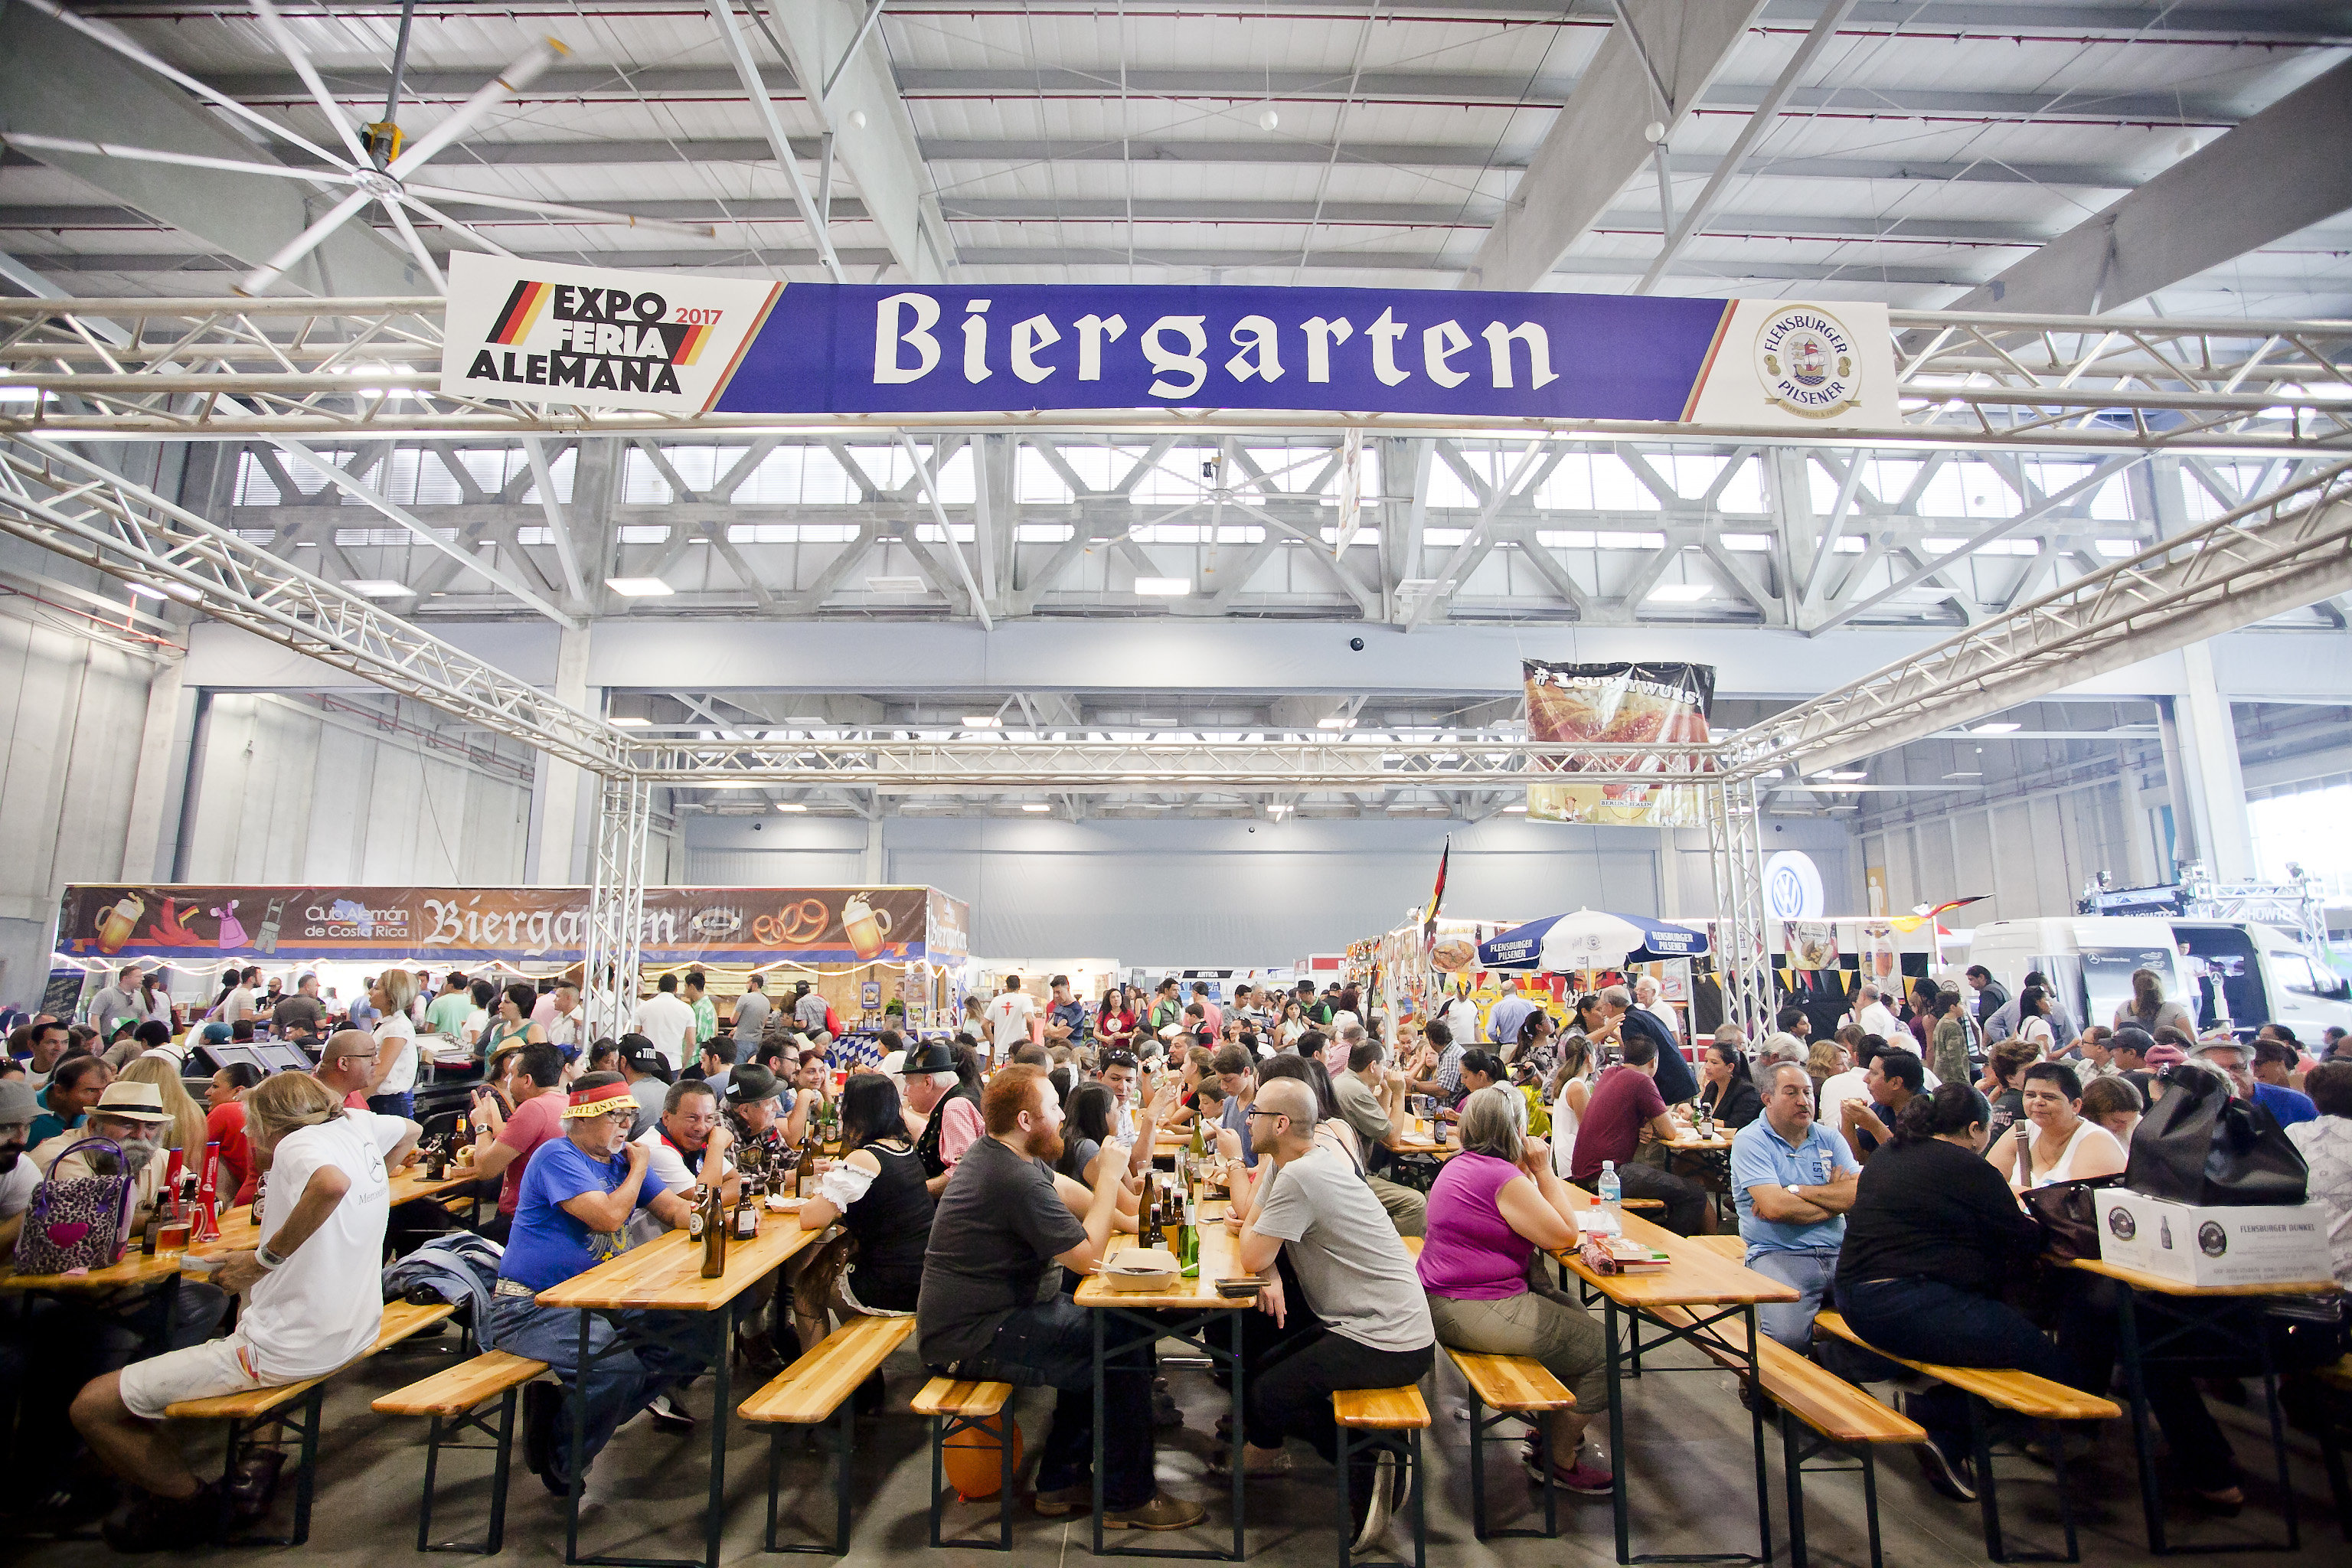 La Expo Feria Alemana viene llena de actividades  culturales y opciones de becas